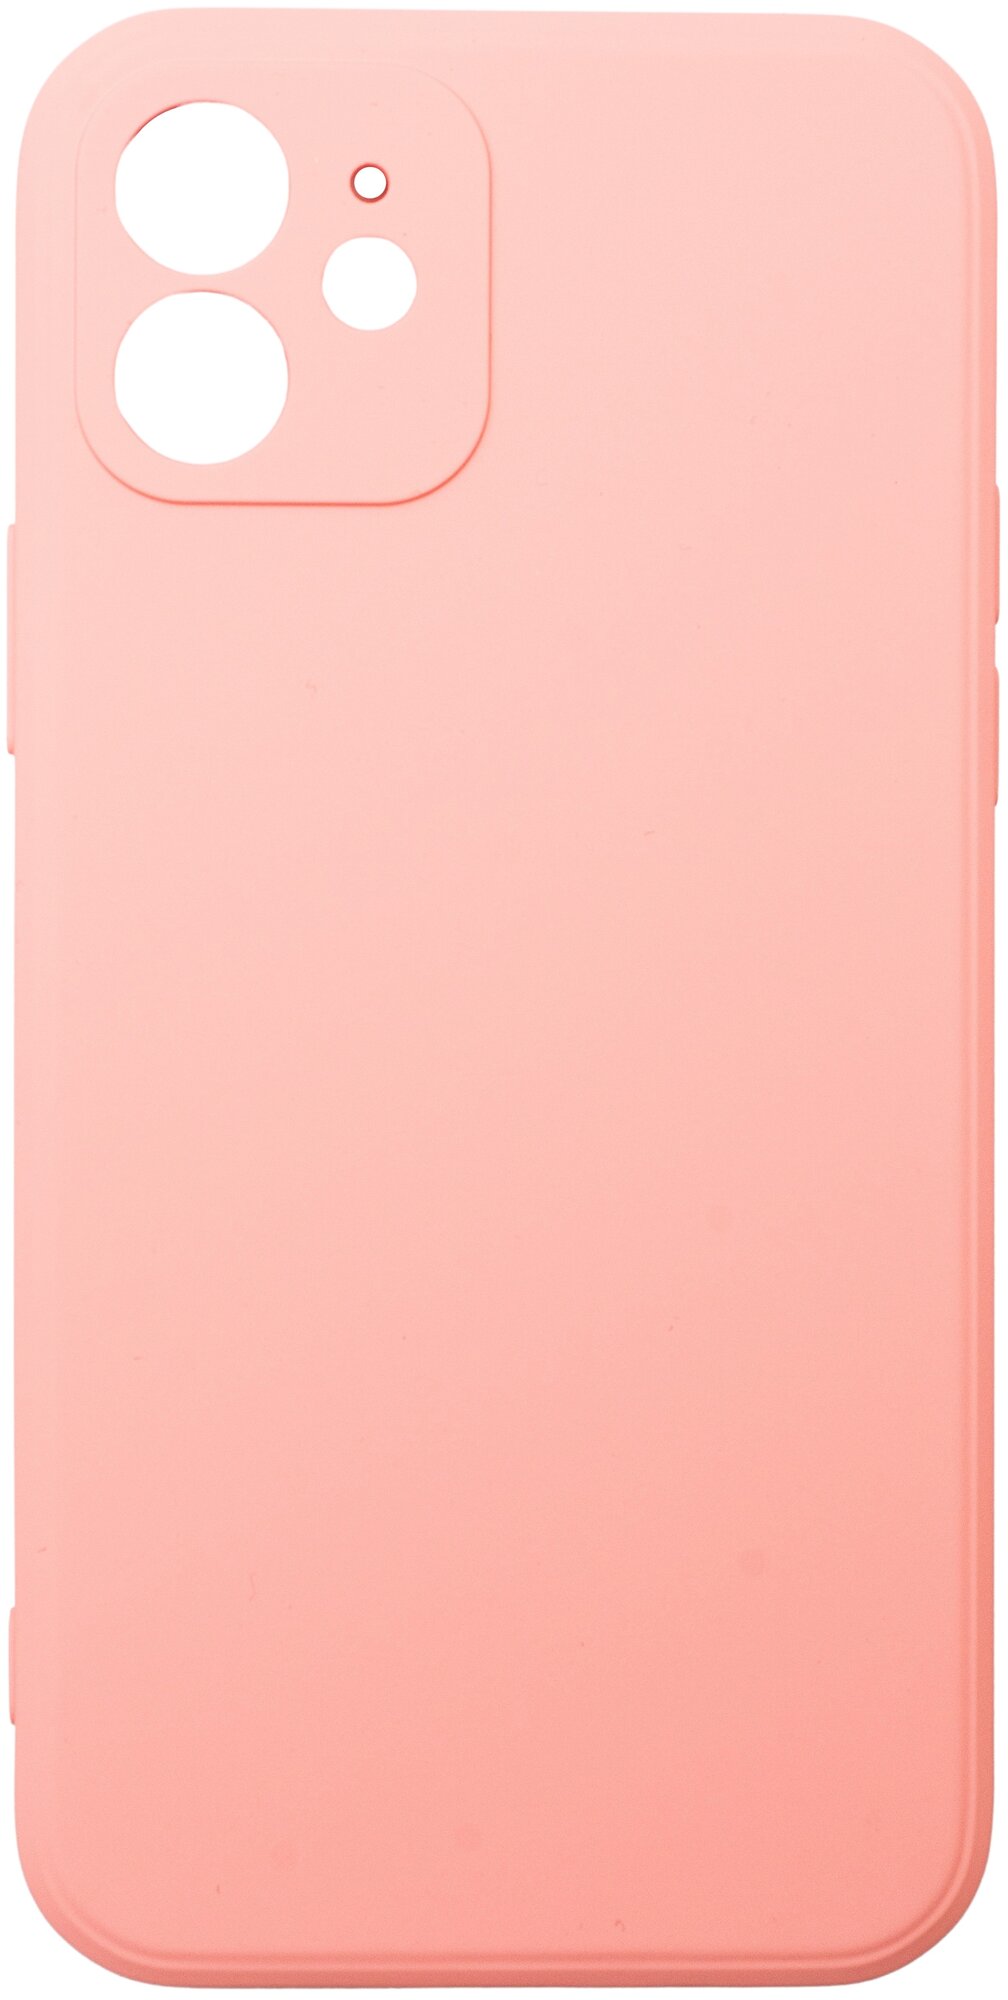 Защитный чехол для Apple iPhone 12 силиконовый цветной защита со всех сторон silicone case (оранжевый неон)